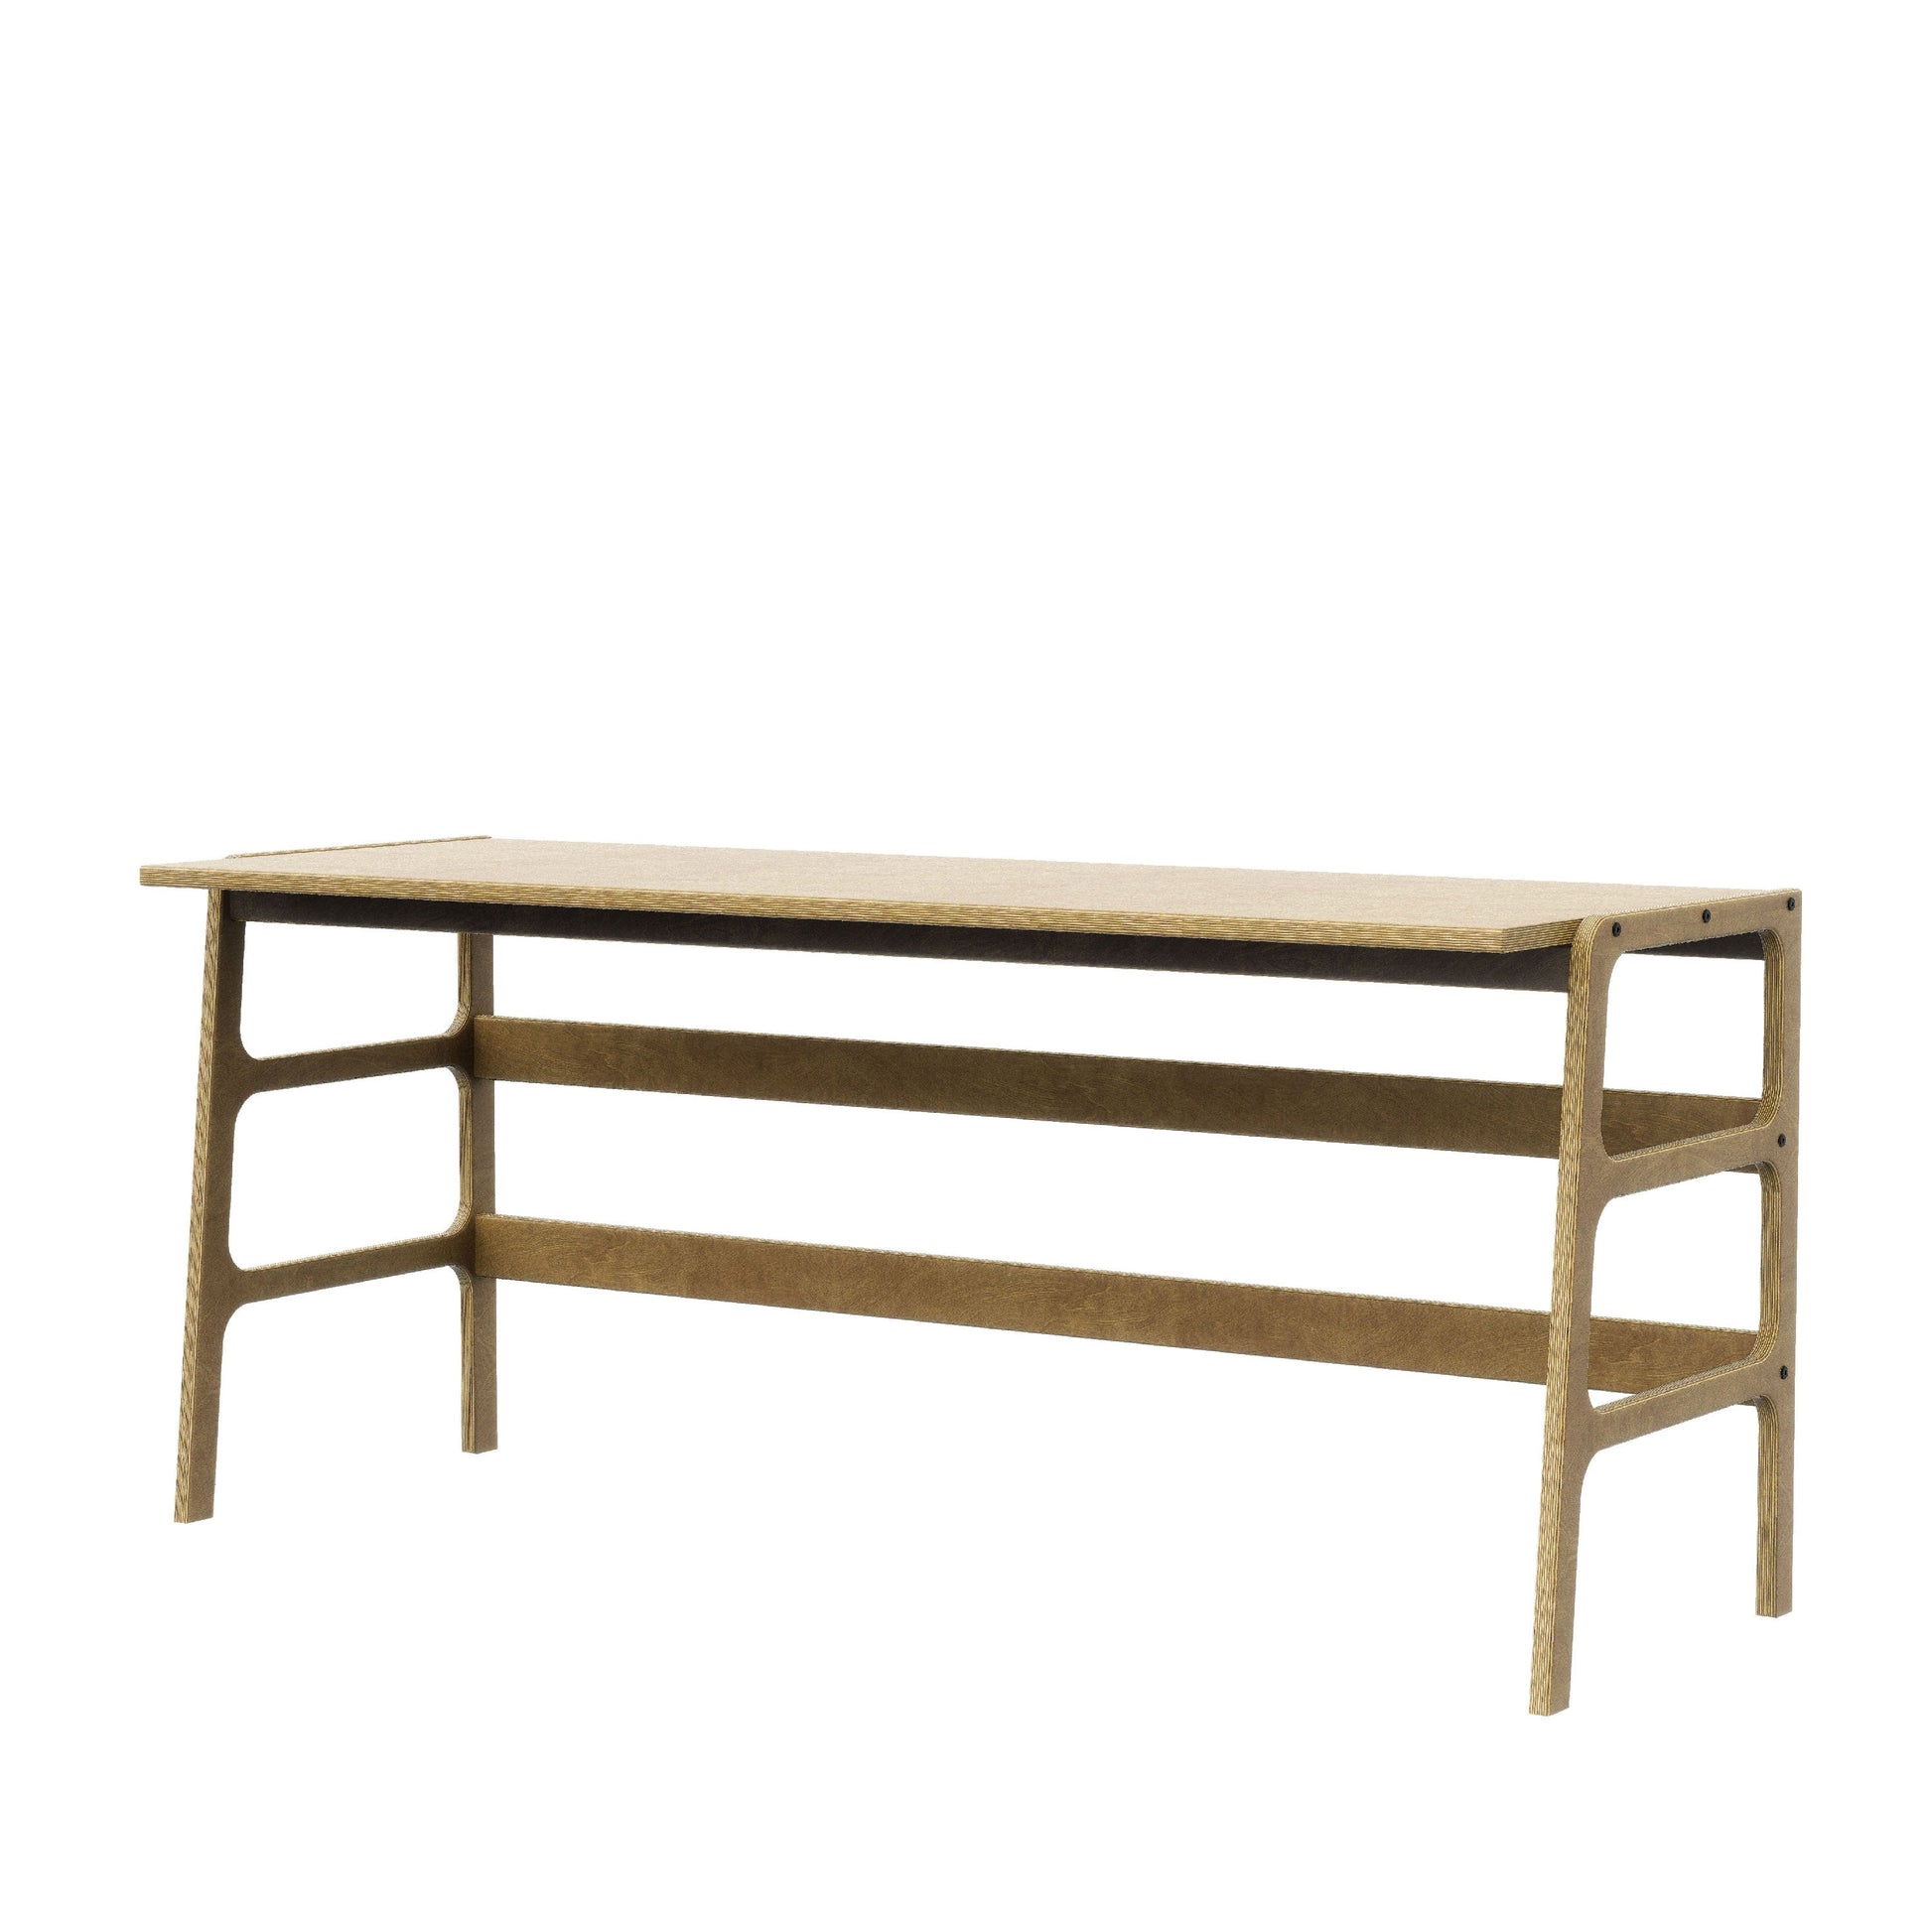 wood-sample-wooden-minimalist